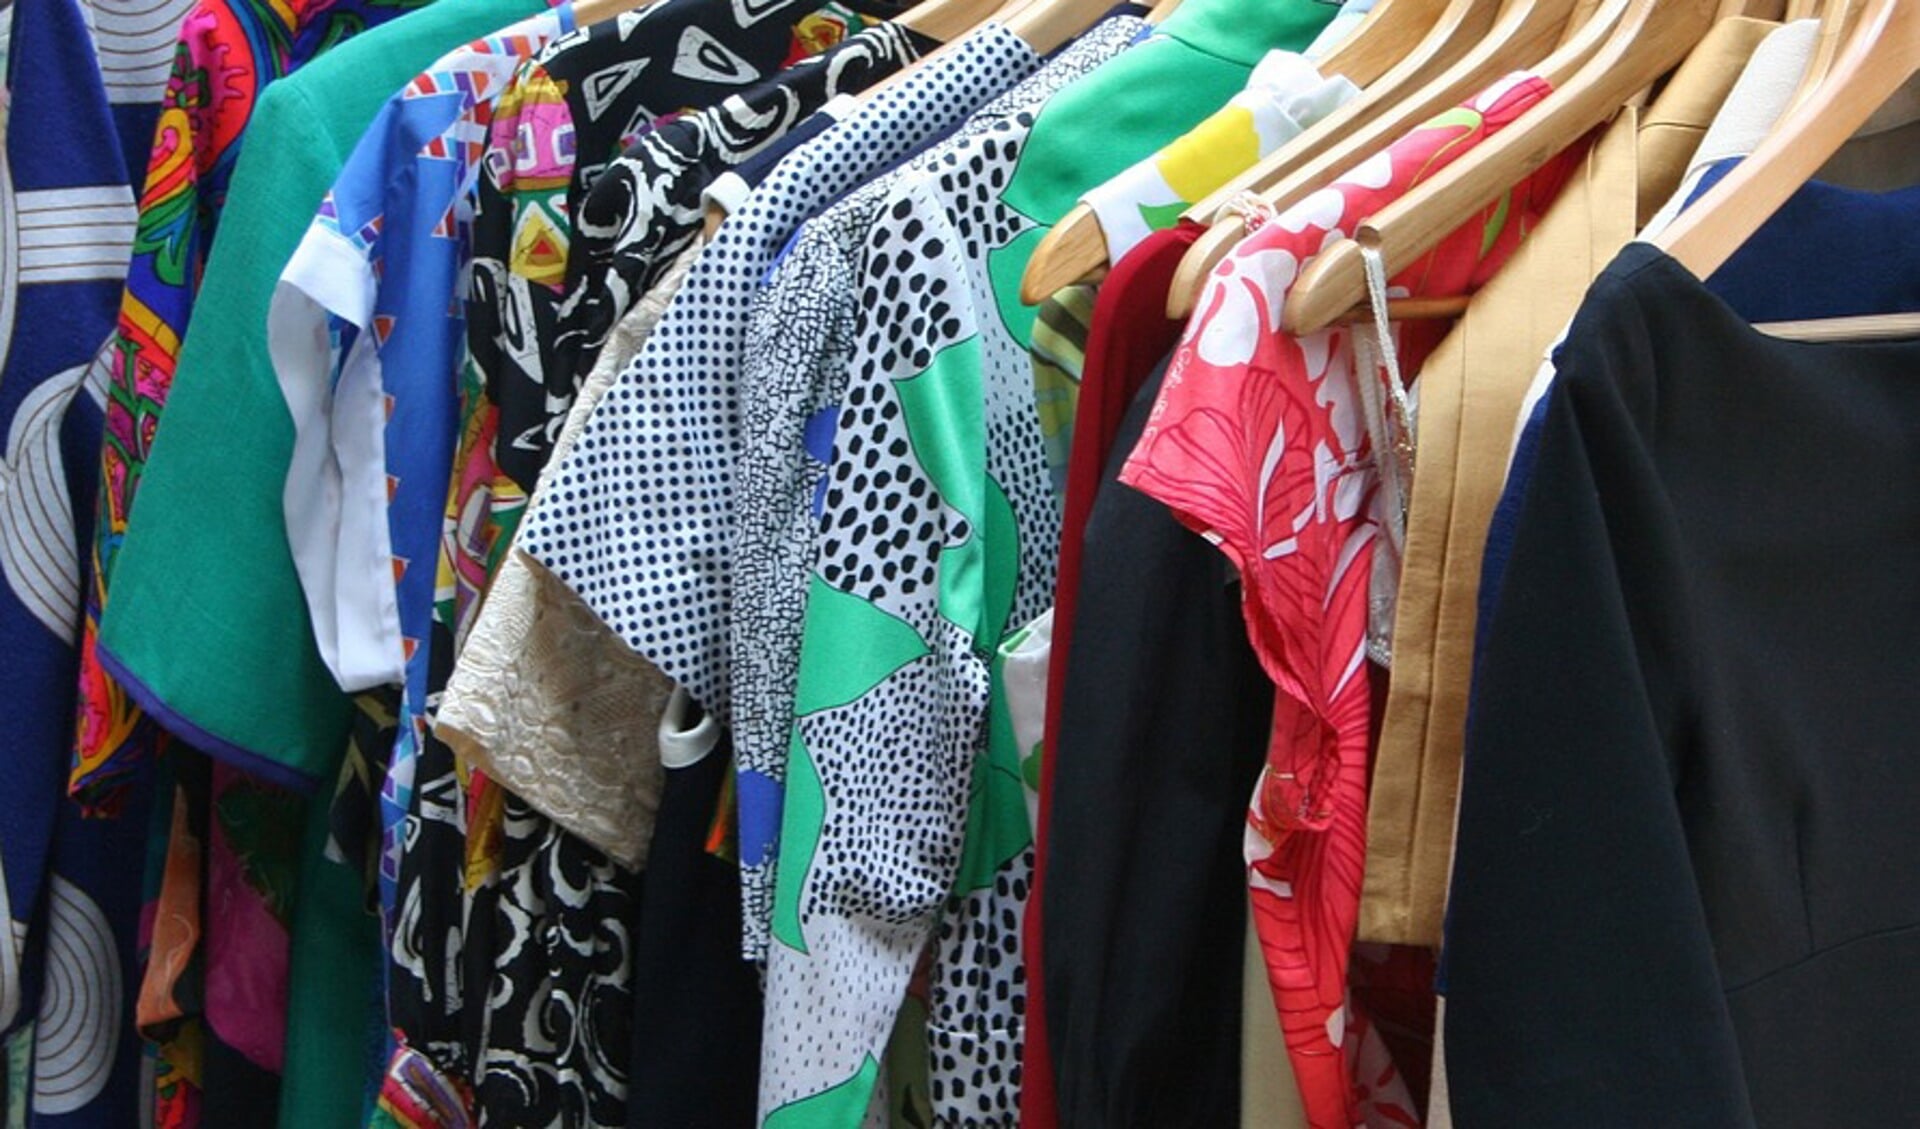 handleiding aansluiten plastic Kom ook naar de 'kleding-ruil-verkoop-markt' in Gennep - Adverteren Boxmeer  | De Maas Driehoek | Krant en Online